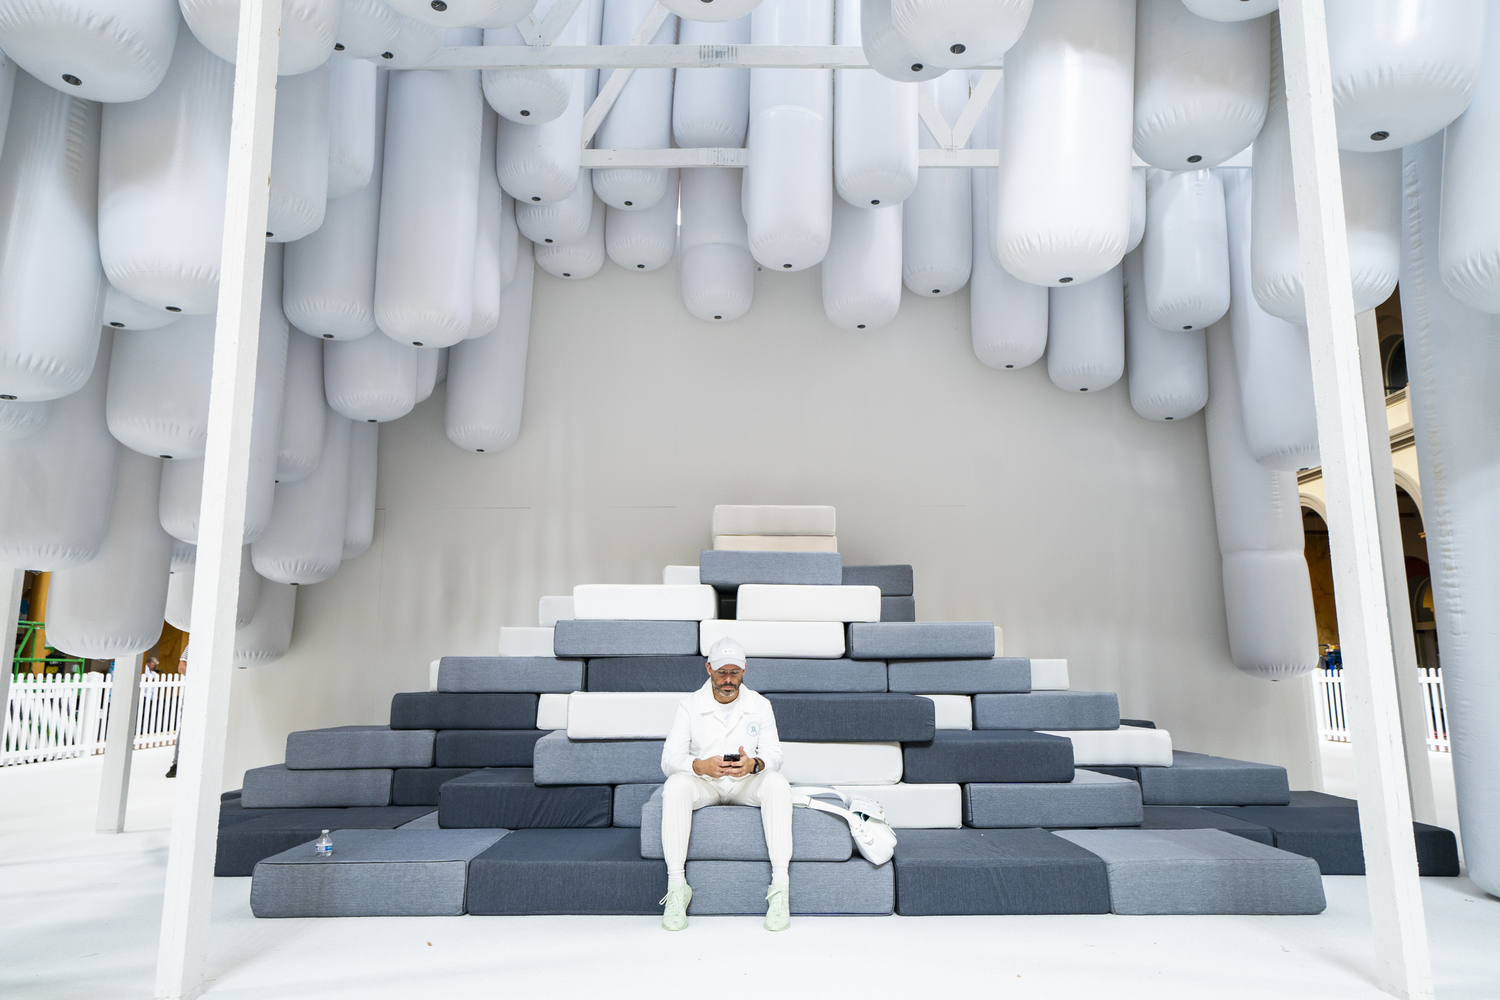 2018 年位於美國華盛頓國家建築博物館 Fun House 展覽，主旨為對傳統住宅的回憶及重新詮釋，Daniel Arsham 身為策展人之一，其中身後純白色的未來感屋子正是他的作品。